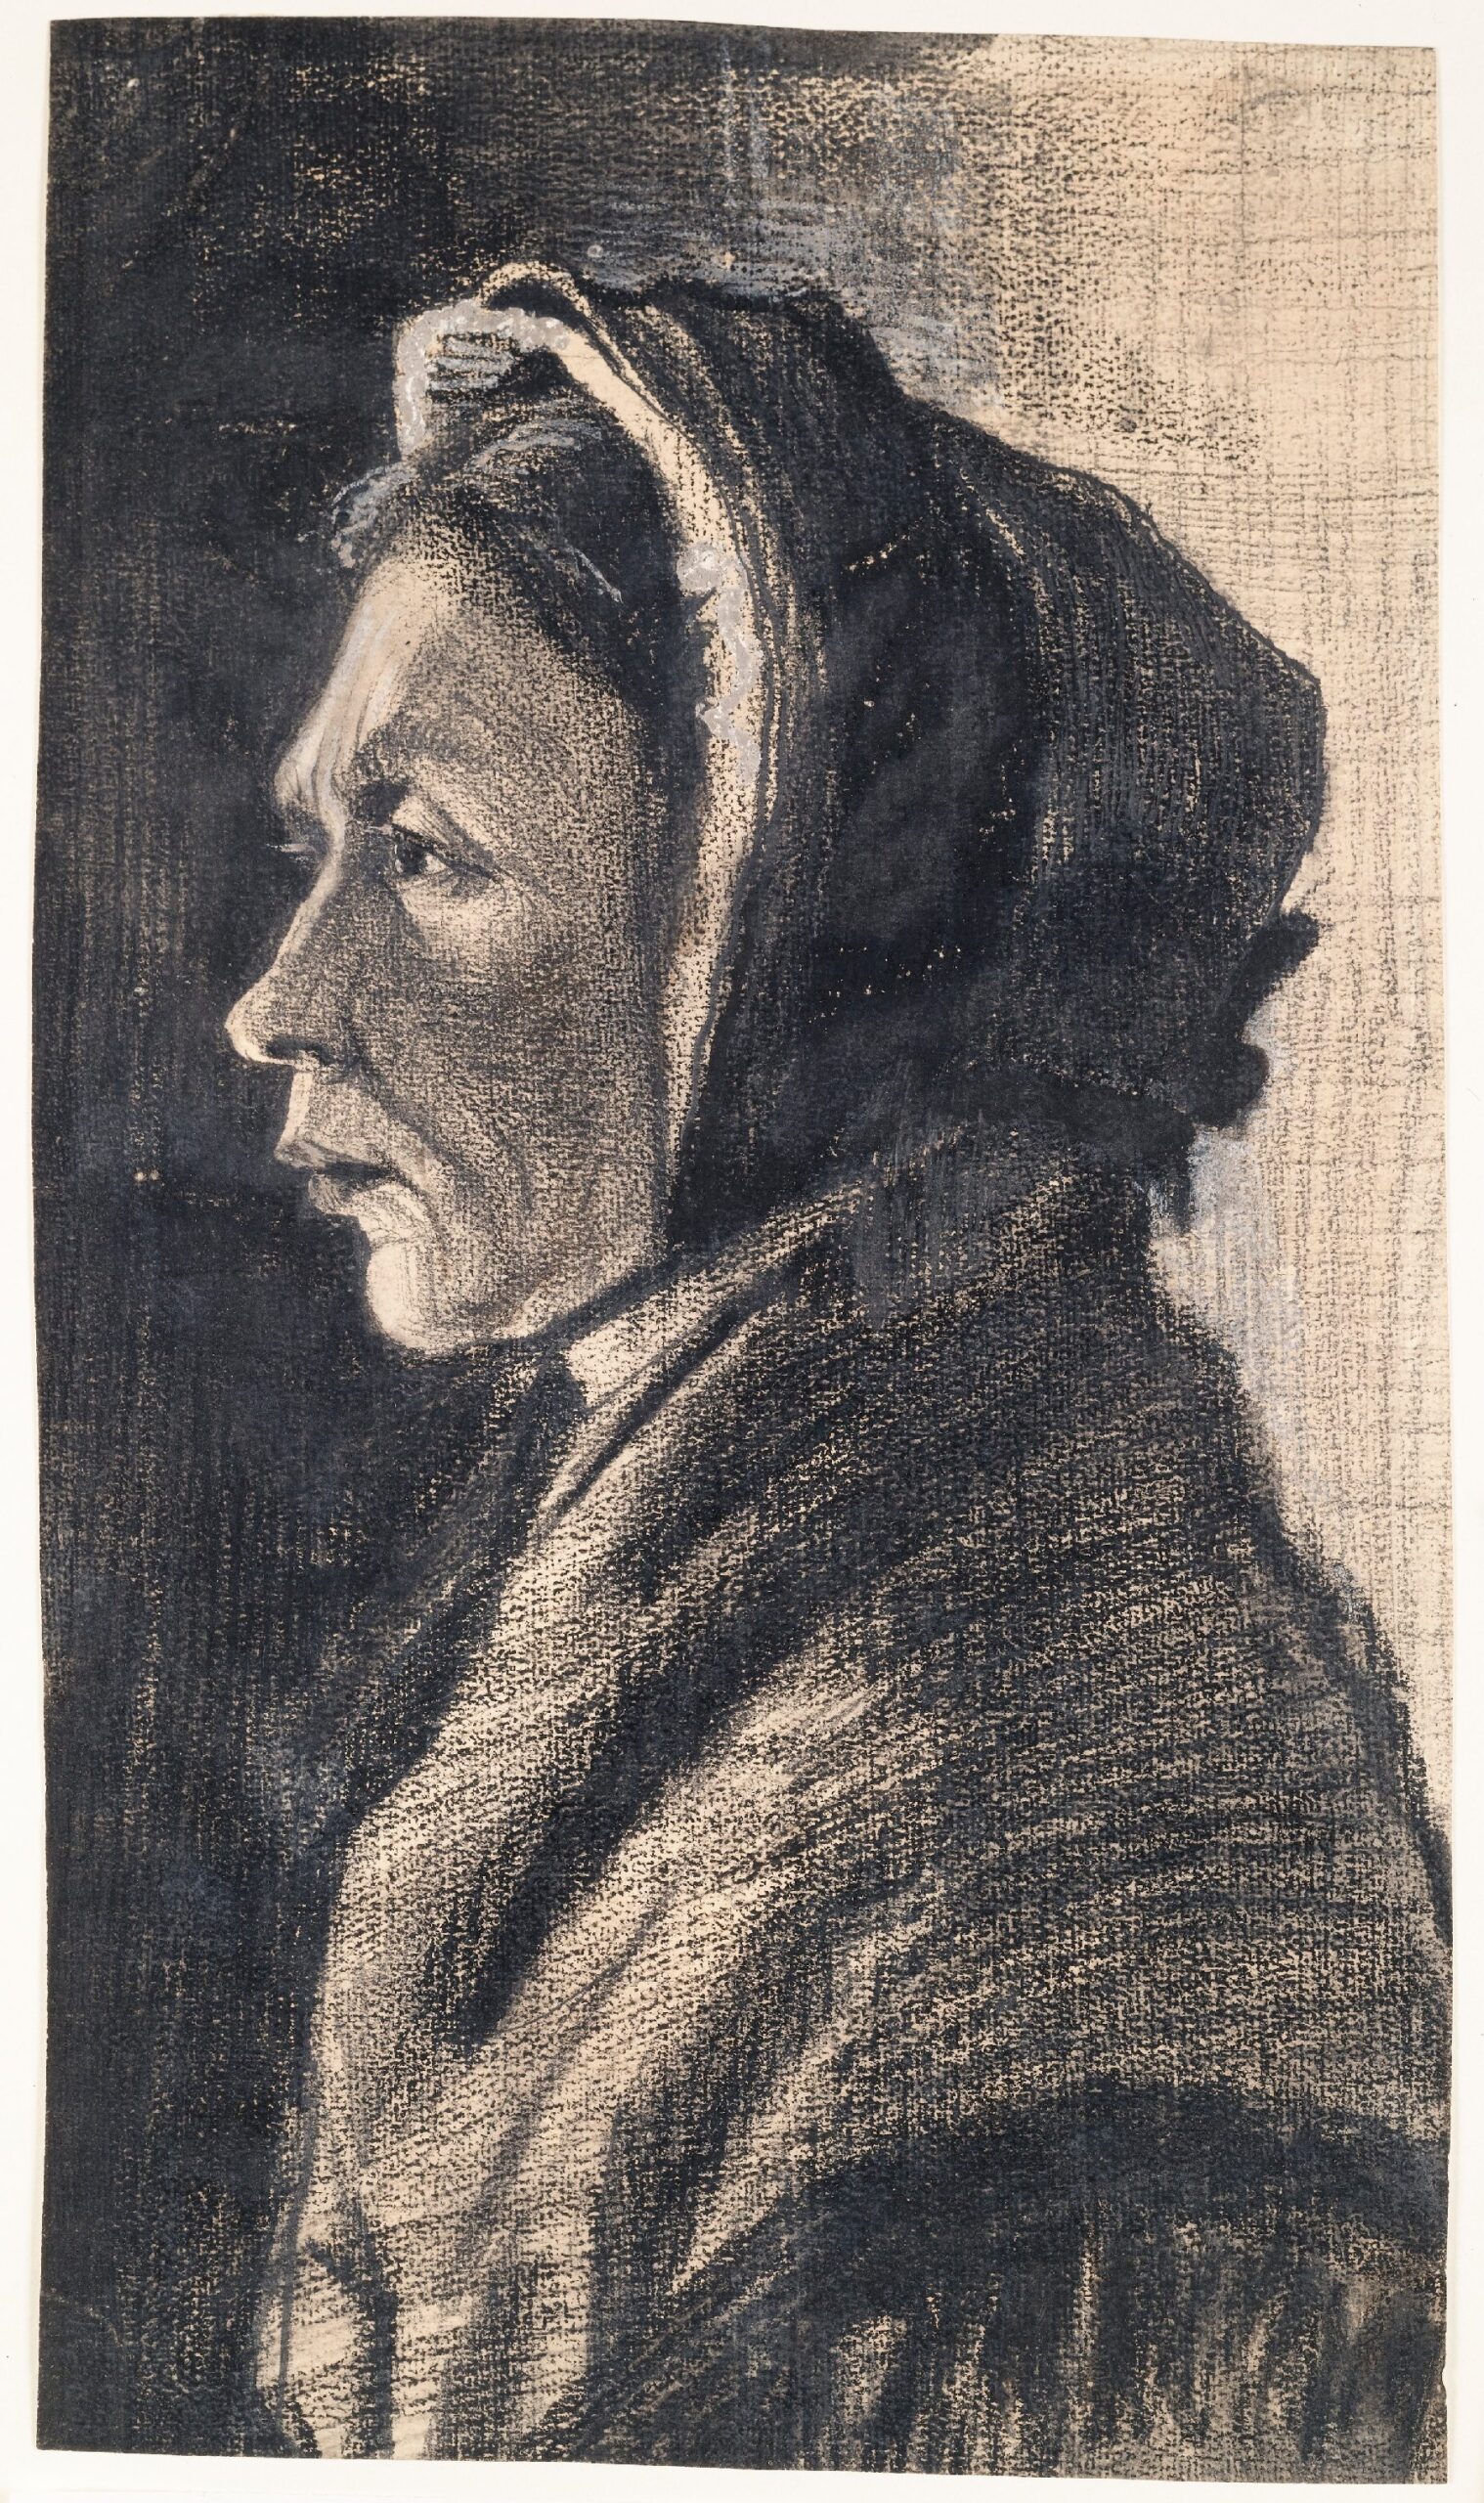 Kop van een vrouw Vincent van Gogh (1853 - 1890), Den Haag, januari 1883